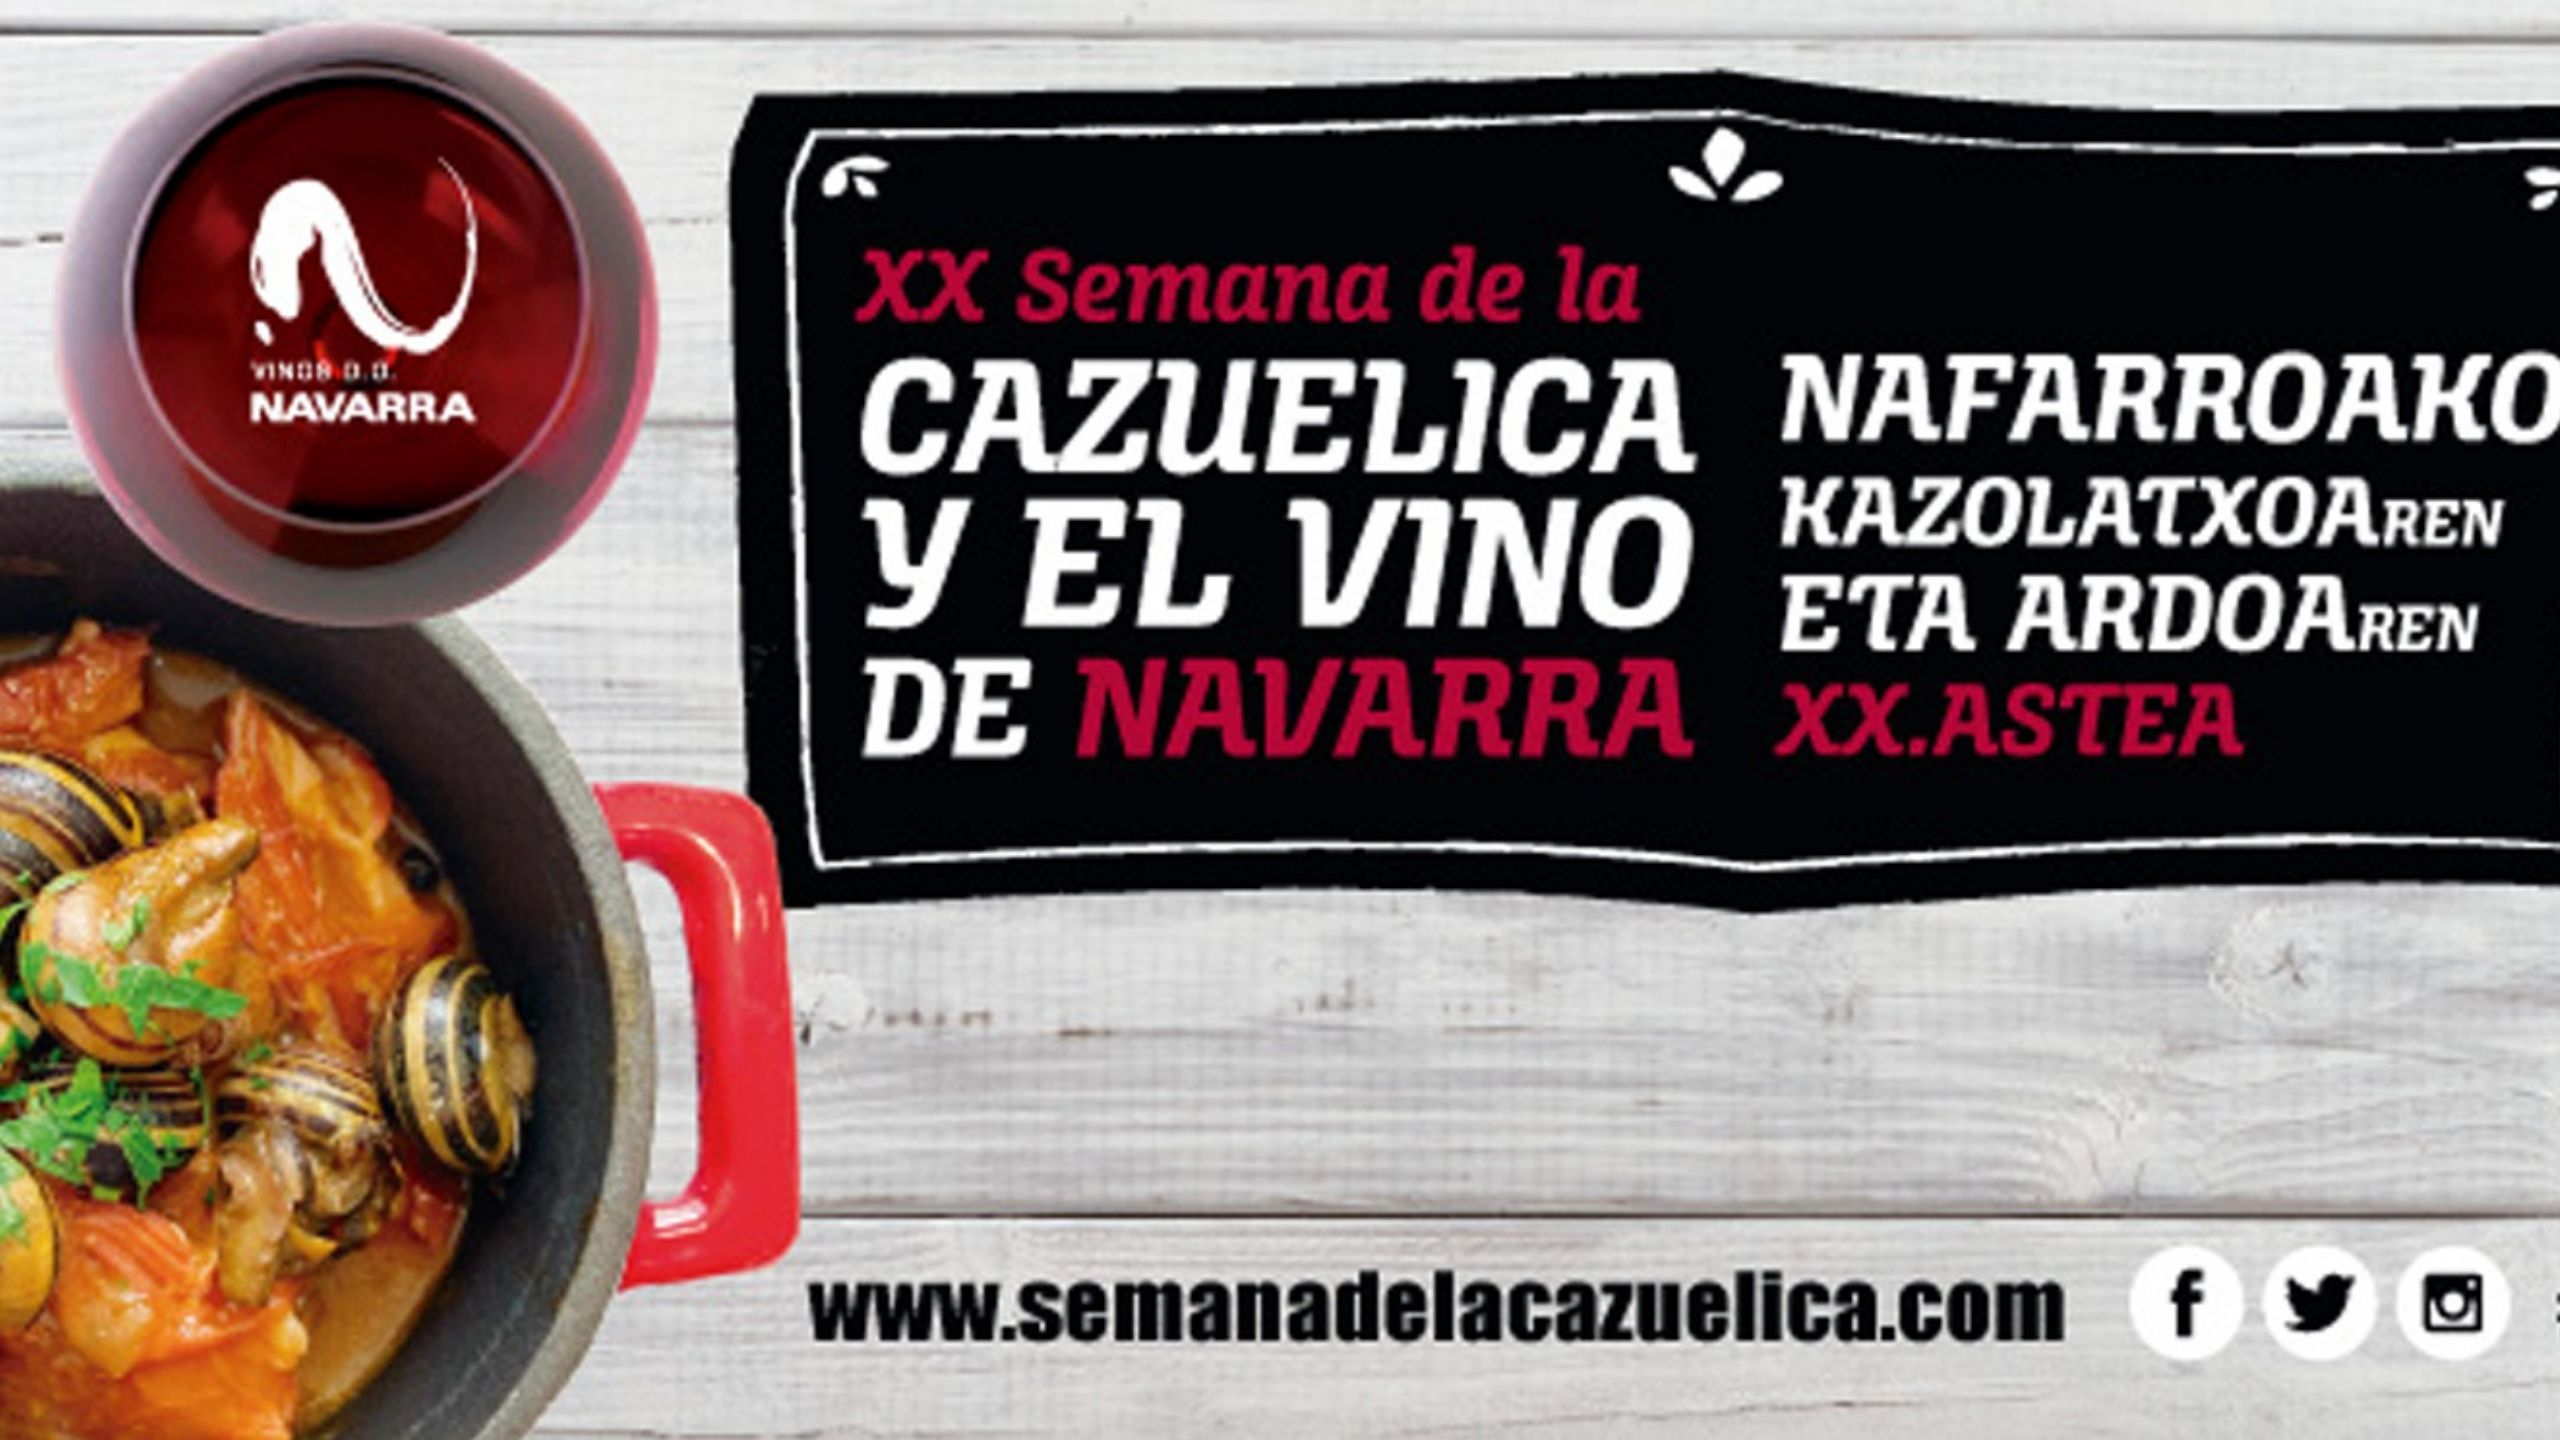 XX Semana de la cazuelica y el vino de Navarra